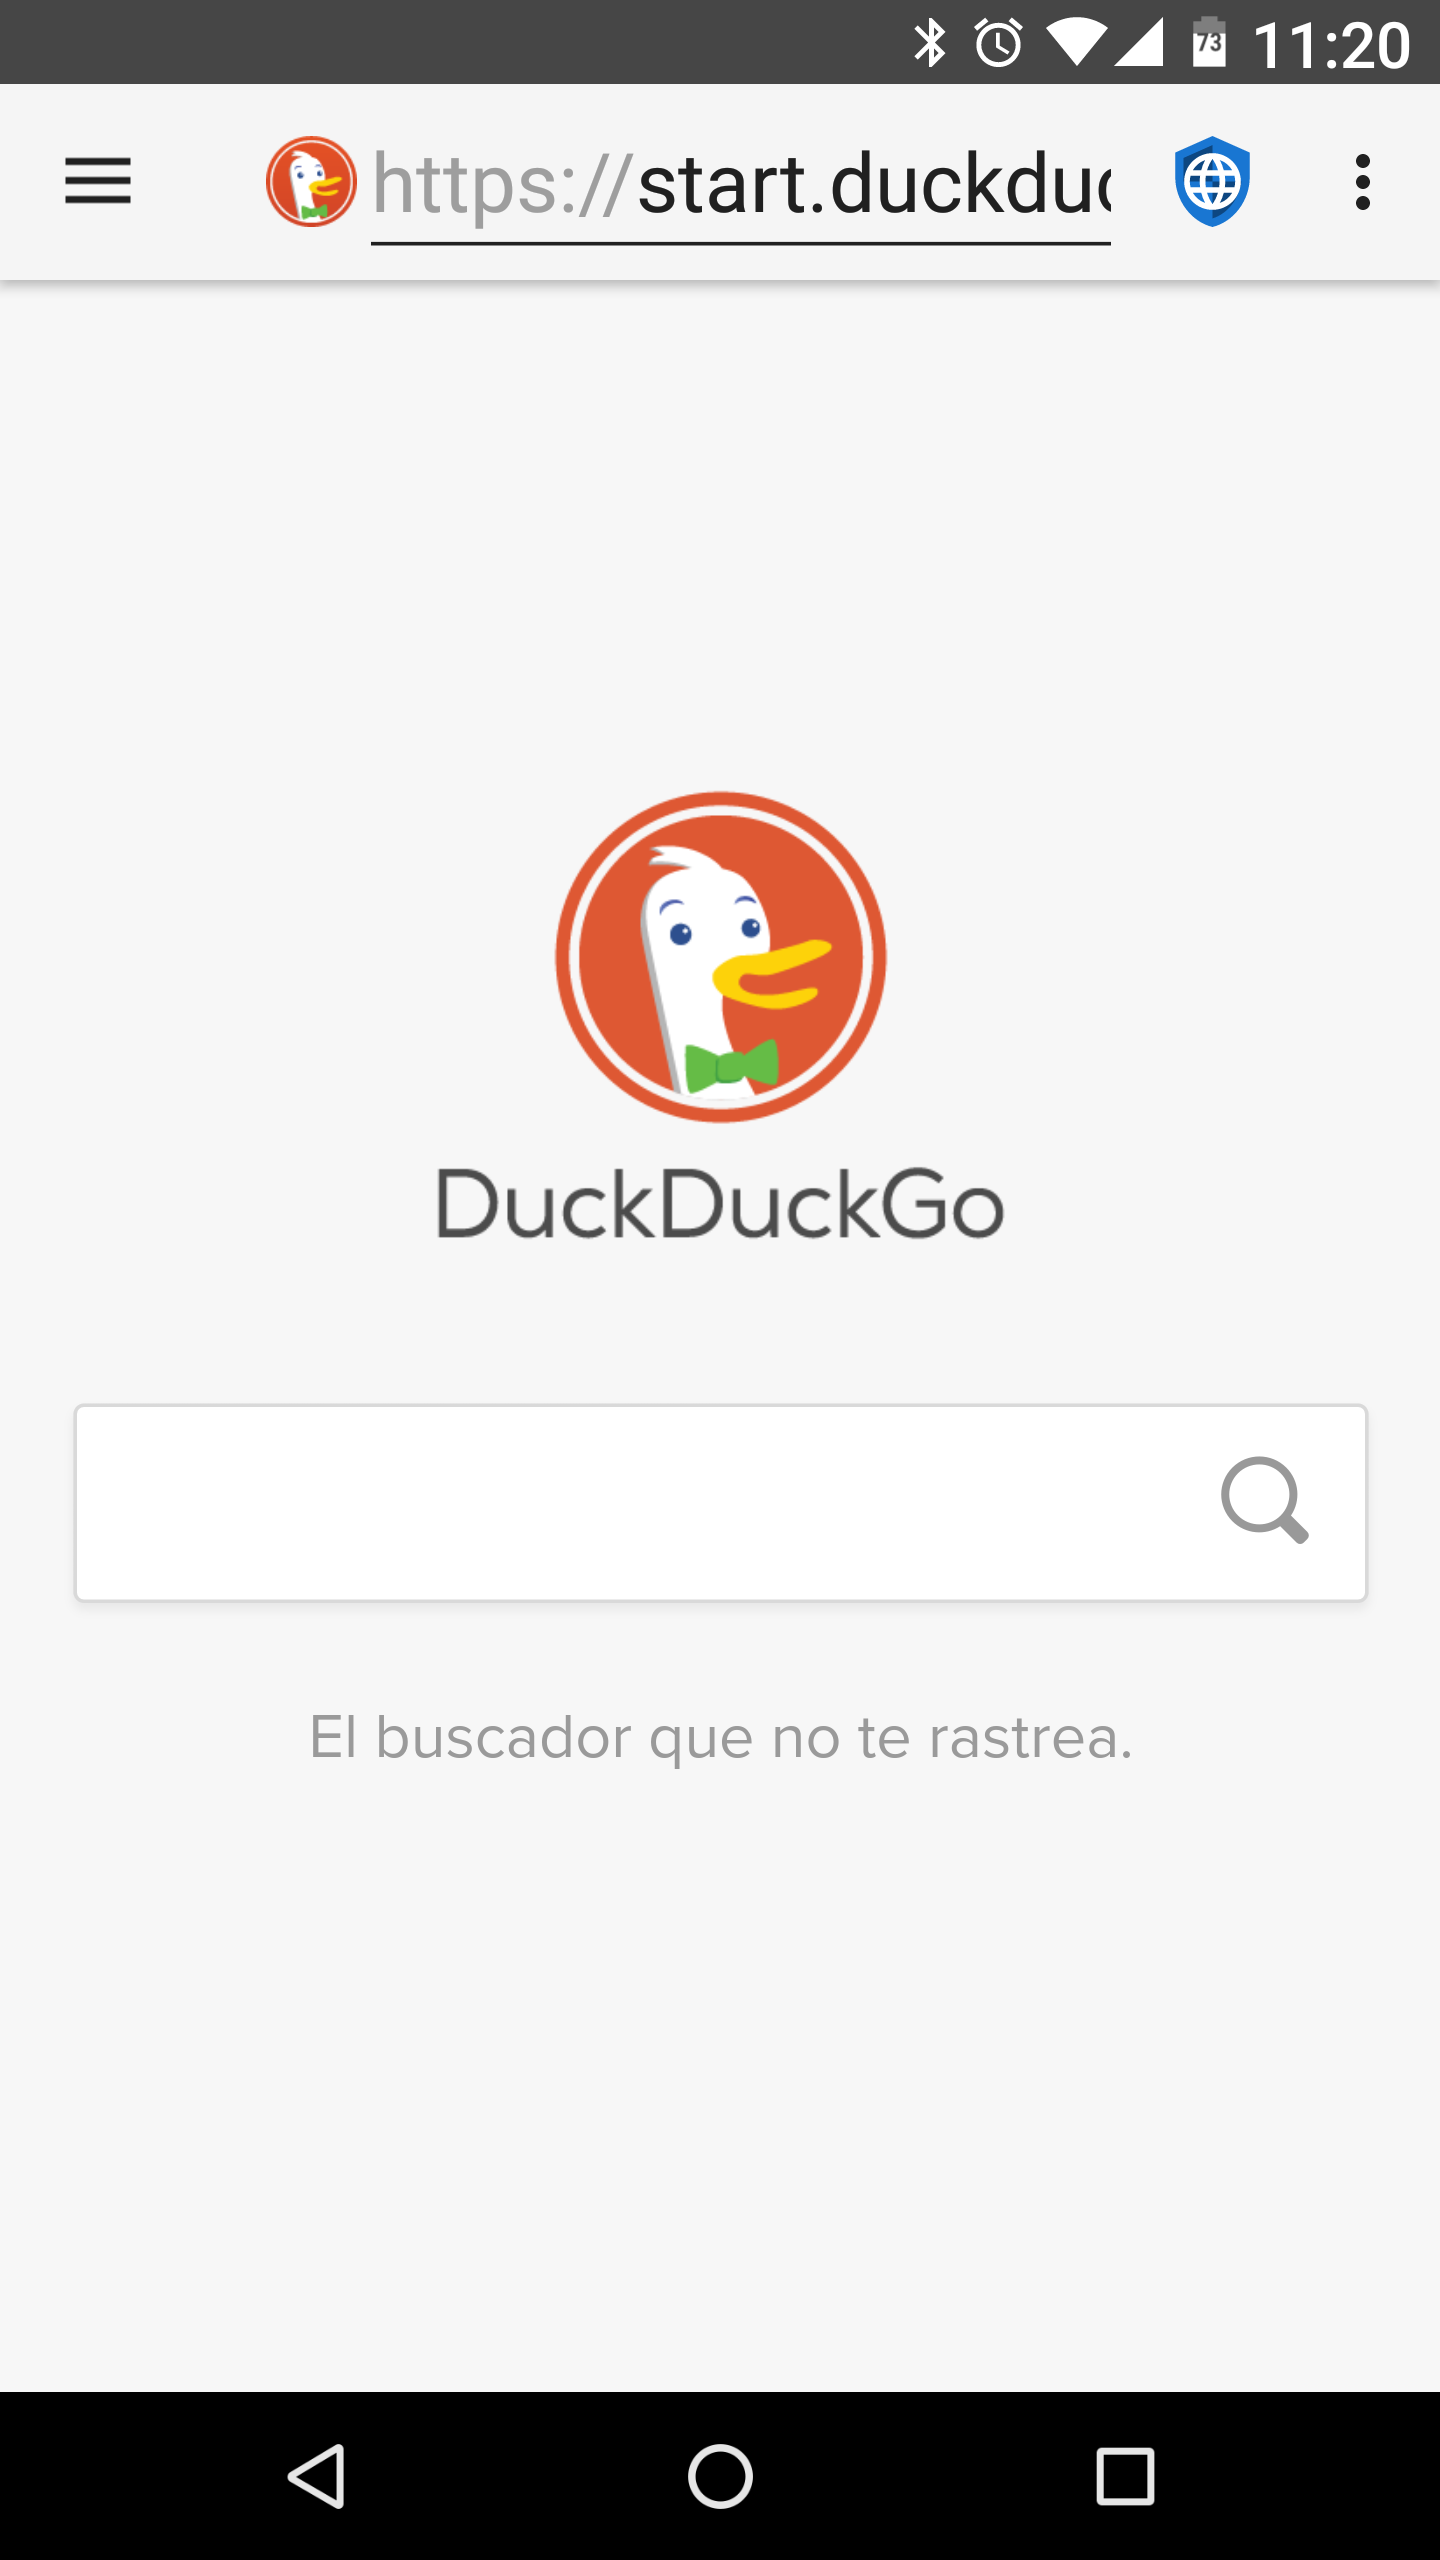 fastlane/metadata/android/es-ES/images/phoneScreenshots/01-DuckDuckGo.png